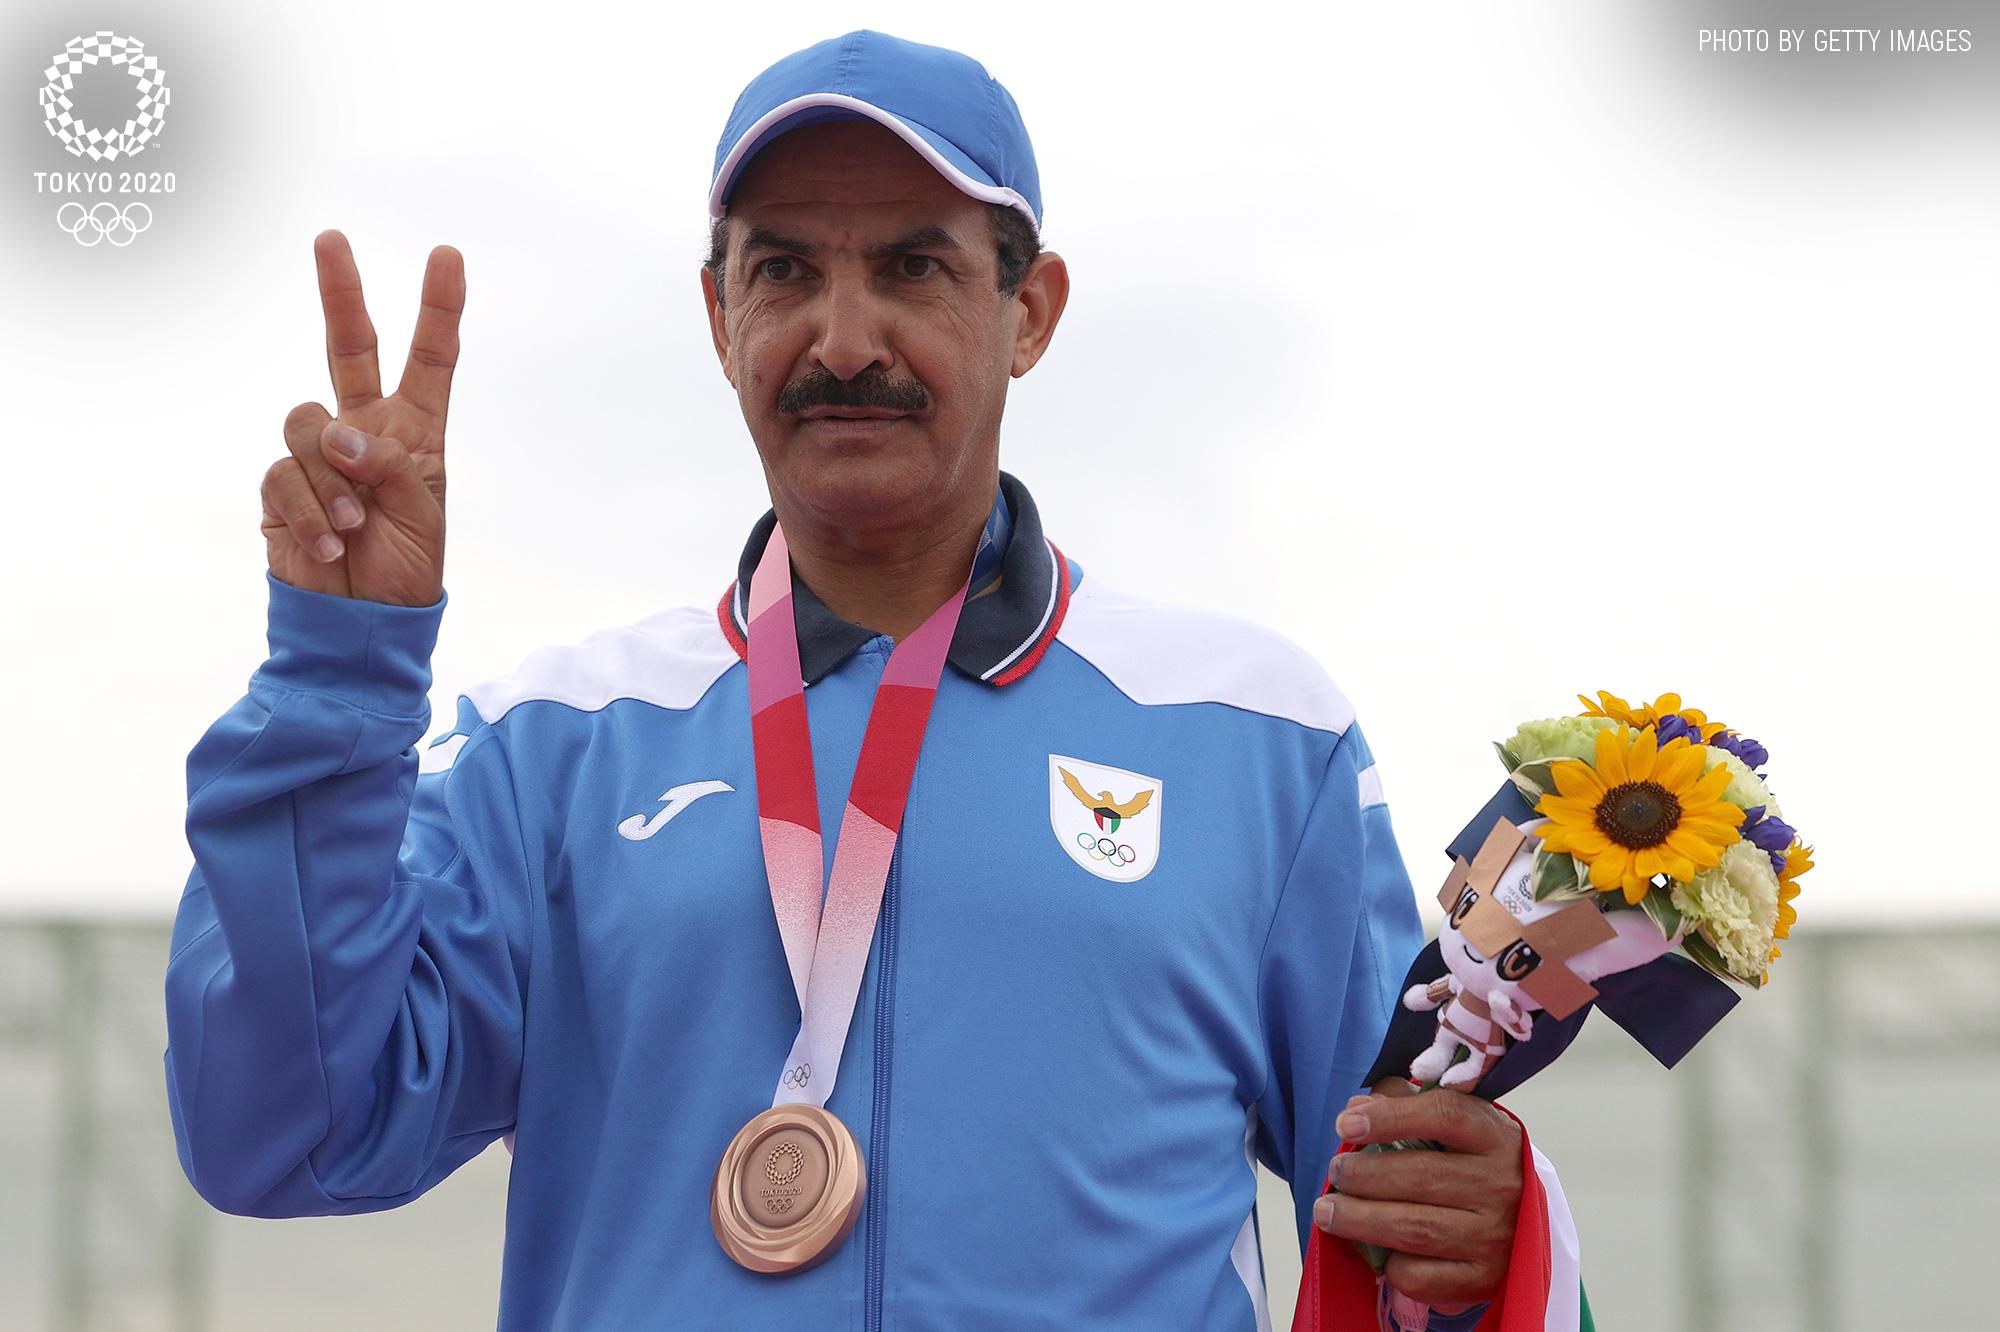 58 साल की उम्र में ओलंपिक पदक जीतकर मिसाल बने कुवैत के ...